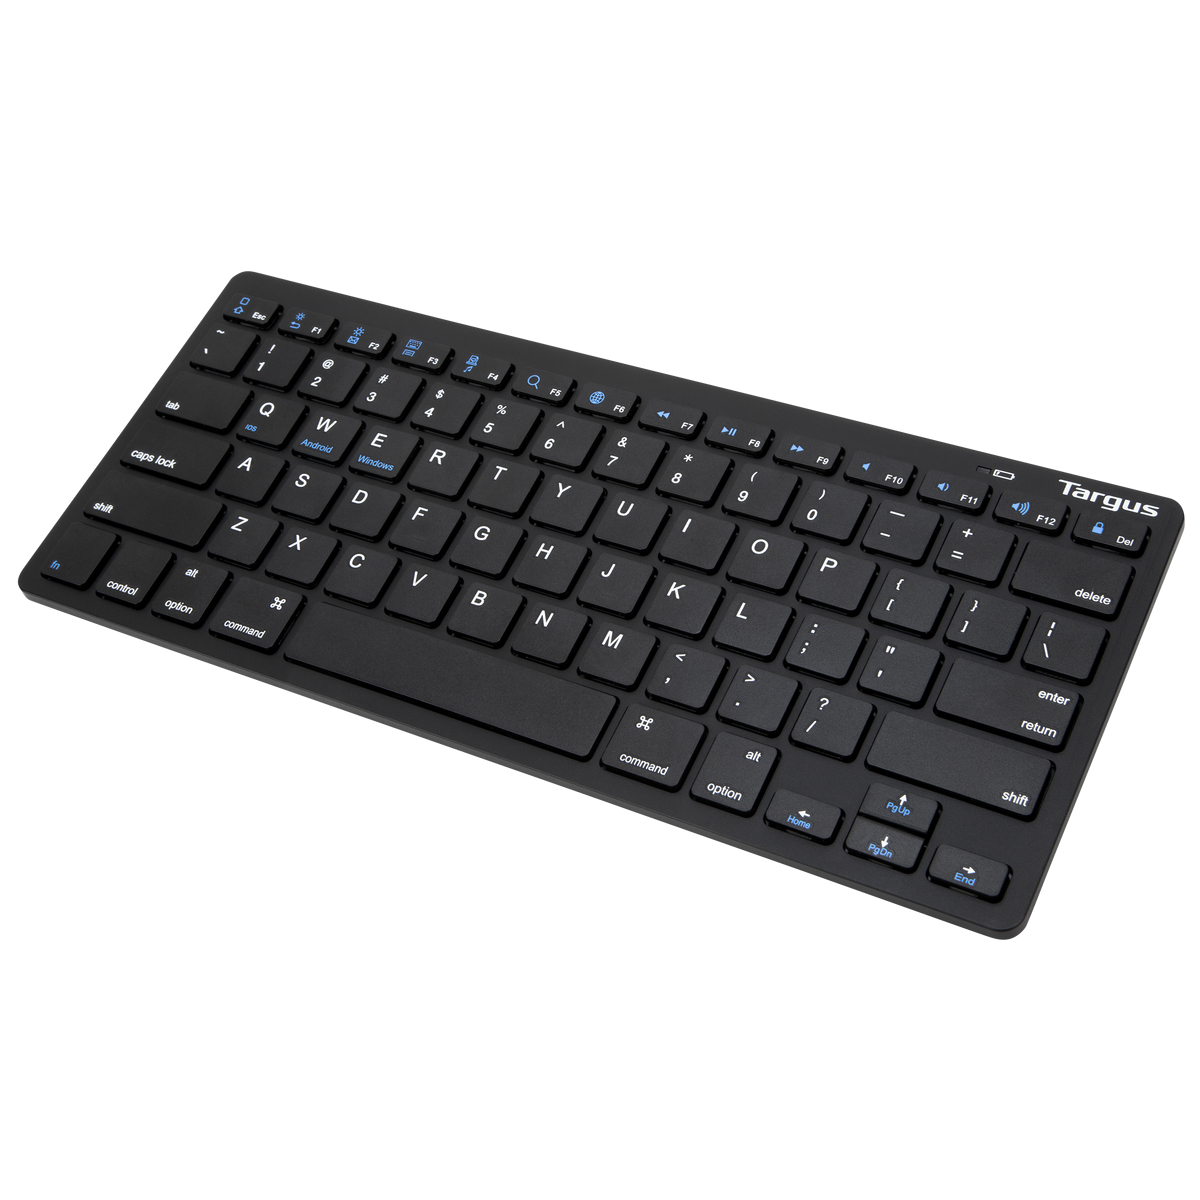 Targus KB55 mobile device keyboard